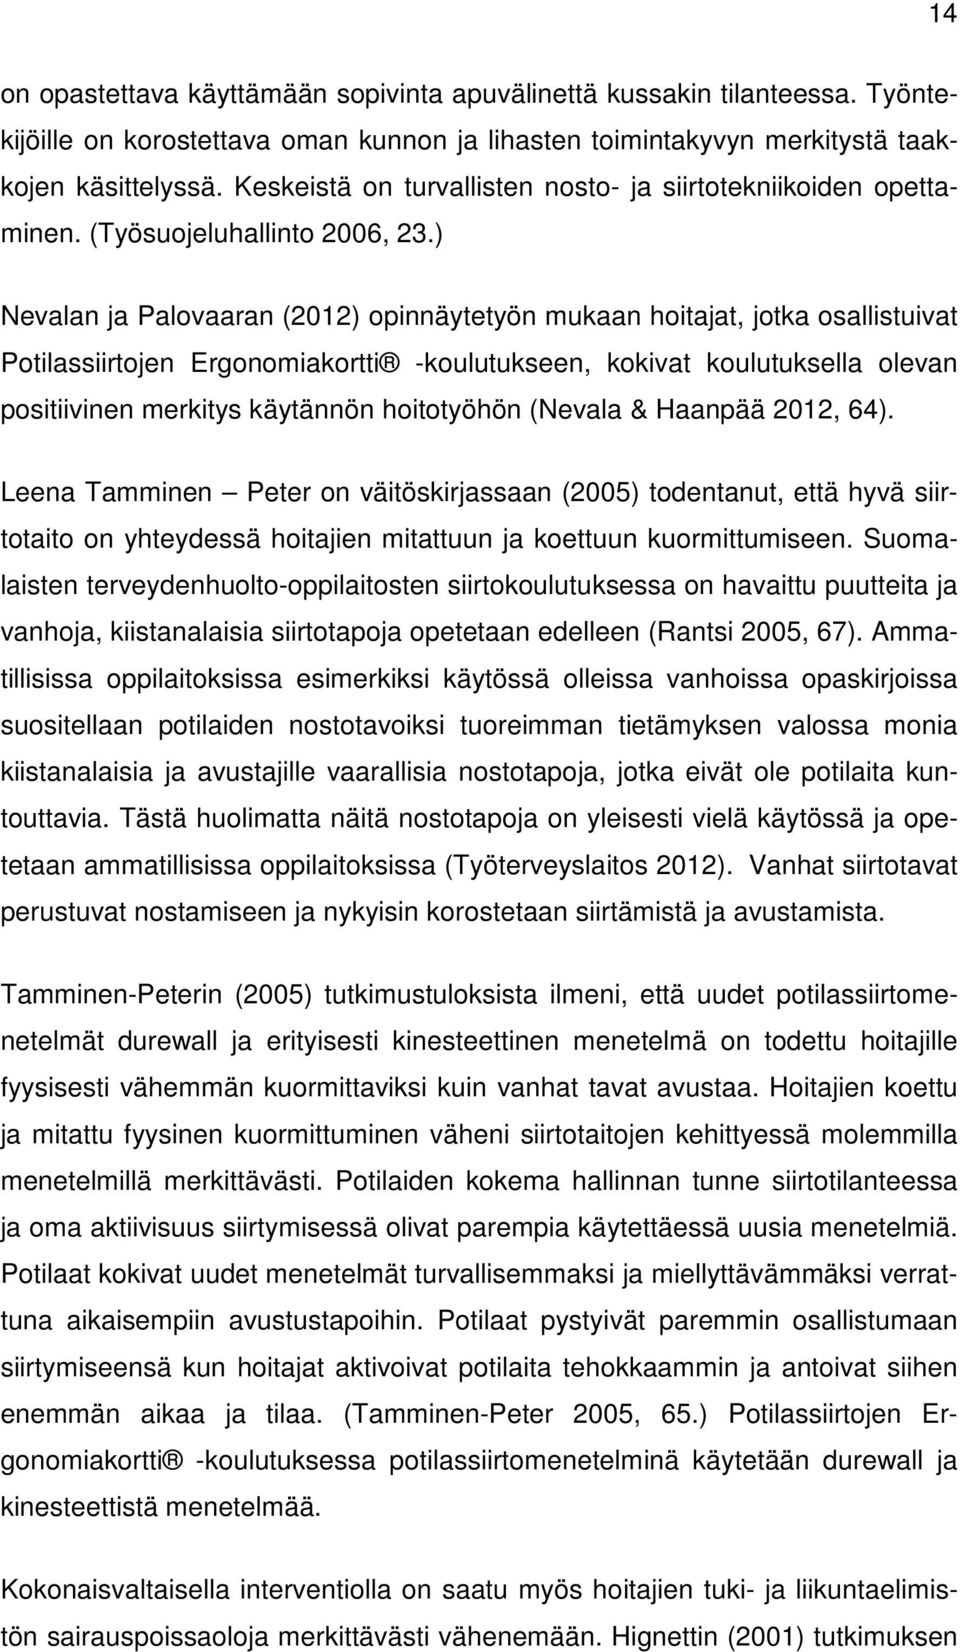 ) Nevalan ja Palovaaran (2012) opinnäytetyön mukaan hoitajat, jotka osallistuivat Potilassiirtojen Ergonomiakortti -koulutukseen, kokivat koulutuksella olevan positiivinen merkitys käytännön